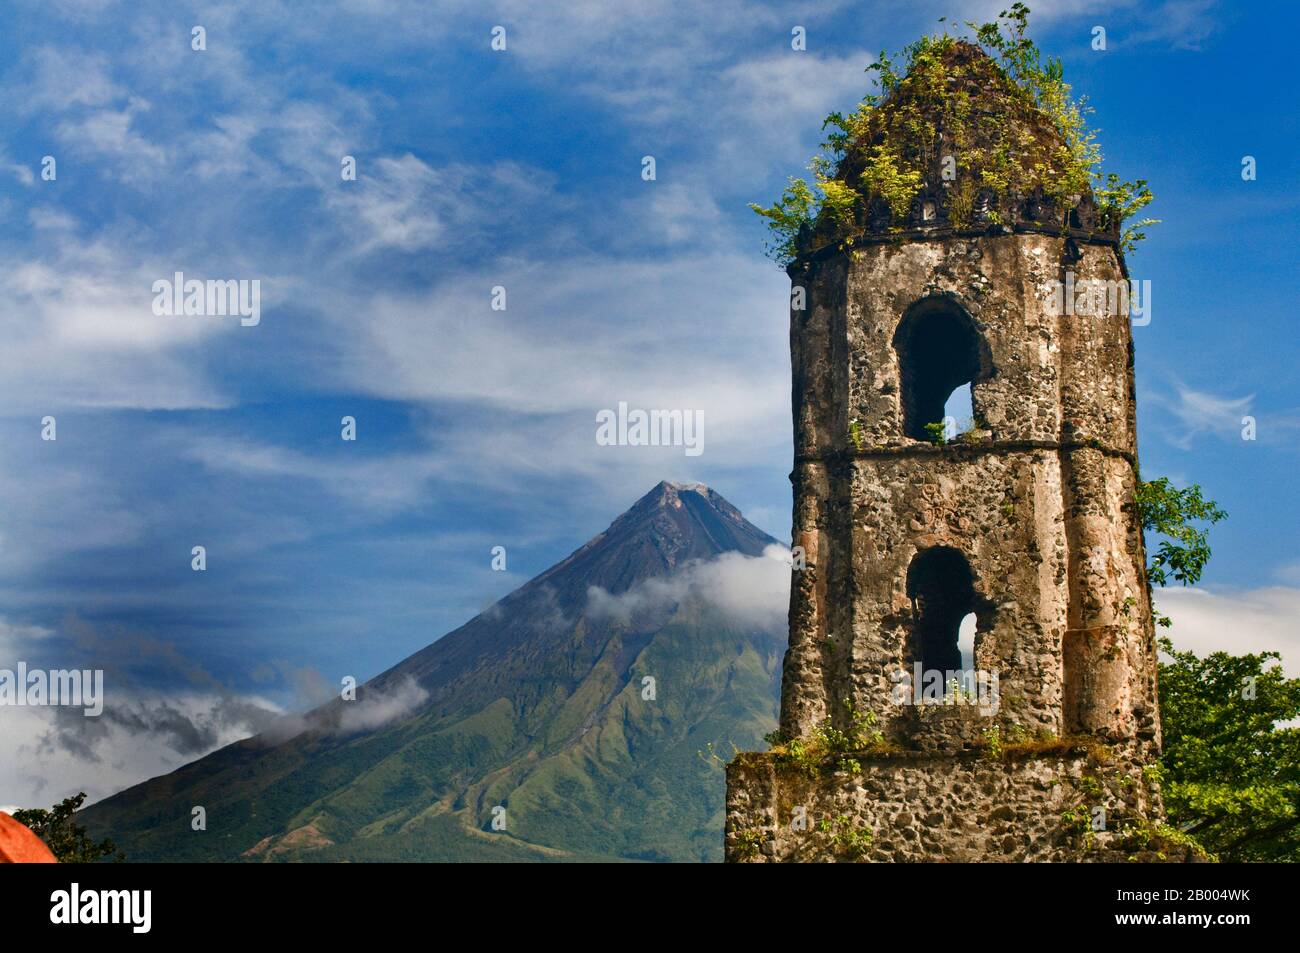 Der Vulkan Mayon, der für seinen perfekten Kegel bekannt ist, ist ein beliebtes Touristenziel. Die Ruinen von Cagsawa sind Reste einer franziskanischen Kirche aus dem 16. Jahrhundert. Stockfoto